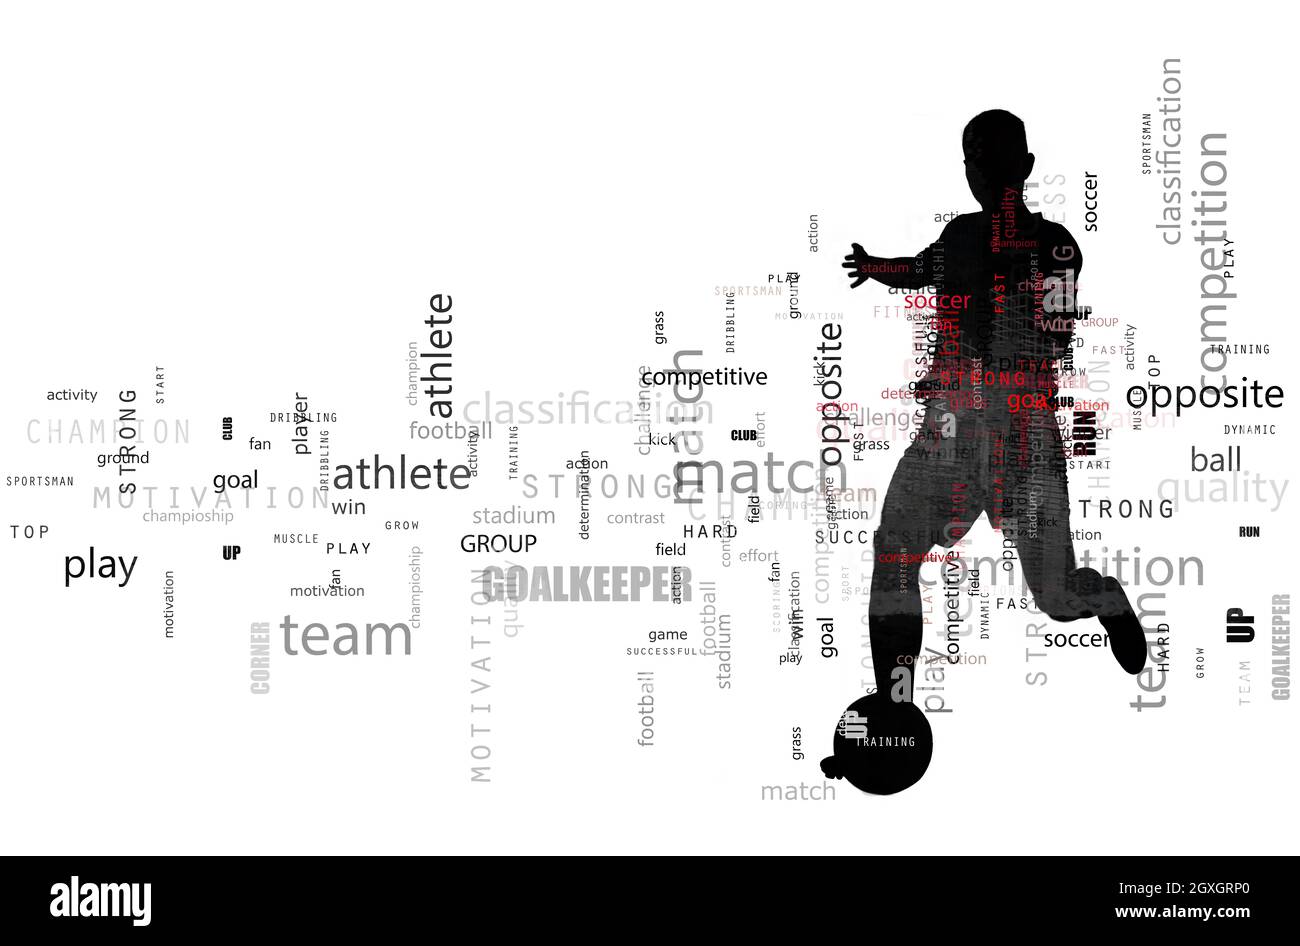 Scène de football d'une silhouette de joueur de football en action pendant un coup de pied. Effet de texte en superposition avec les termes les plus utilisés. Arrière-plan abstrait Banque D'Images